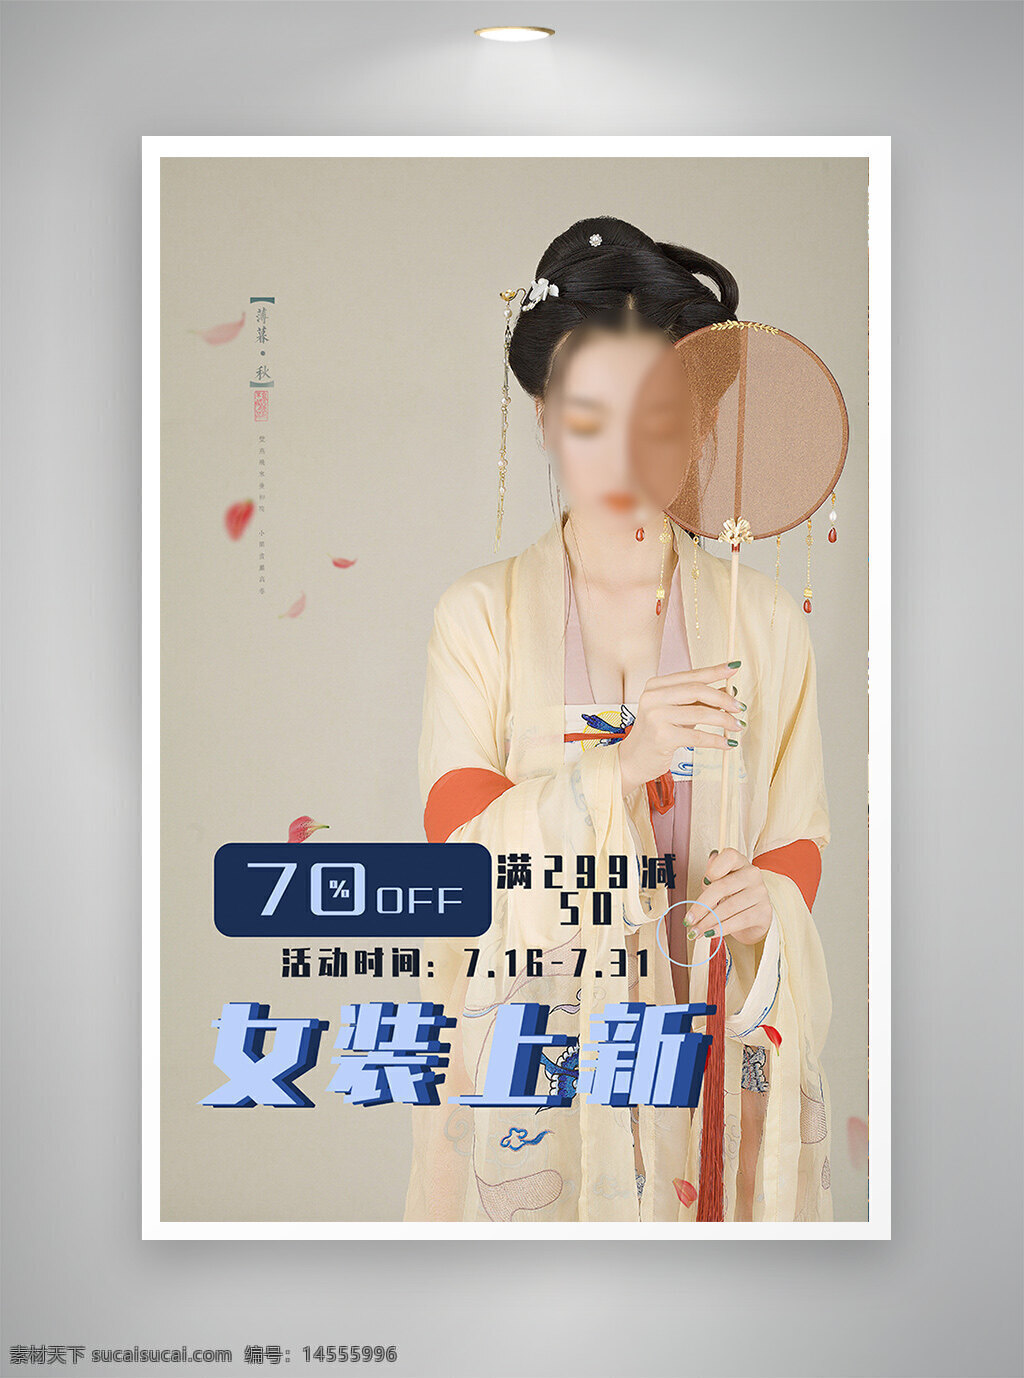 中国风海报 古风海报 促销海报 节日海报 女装上新